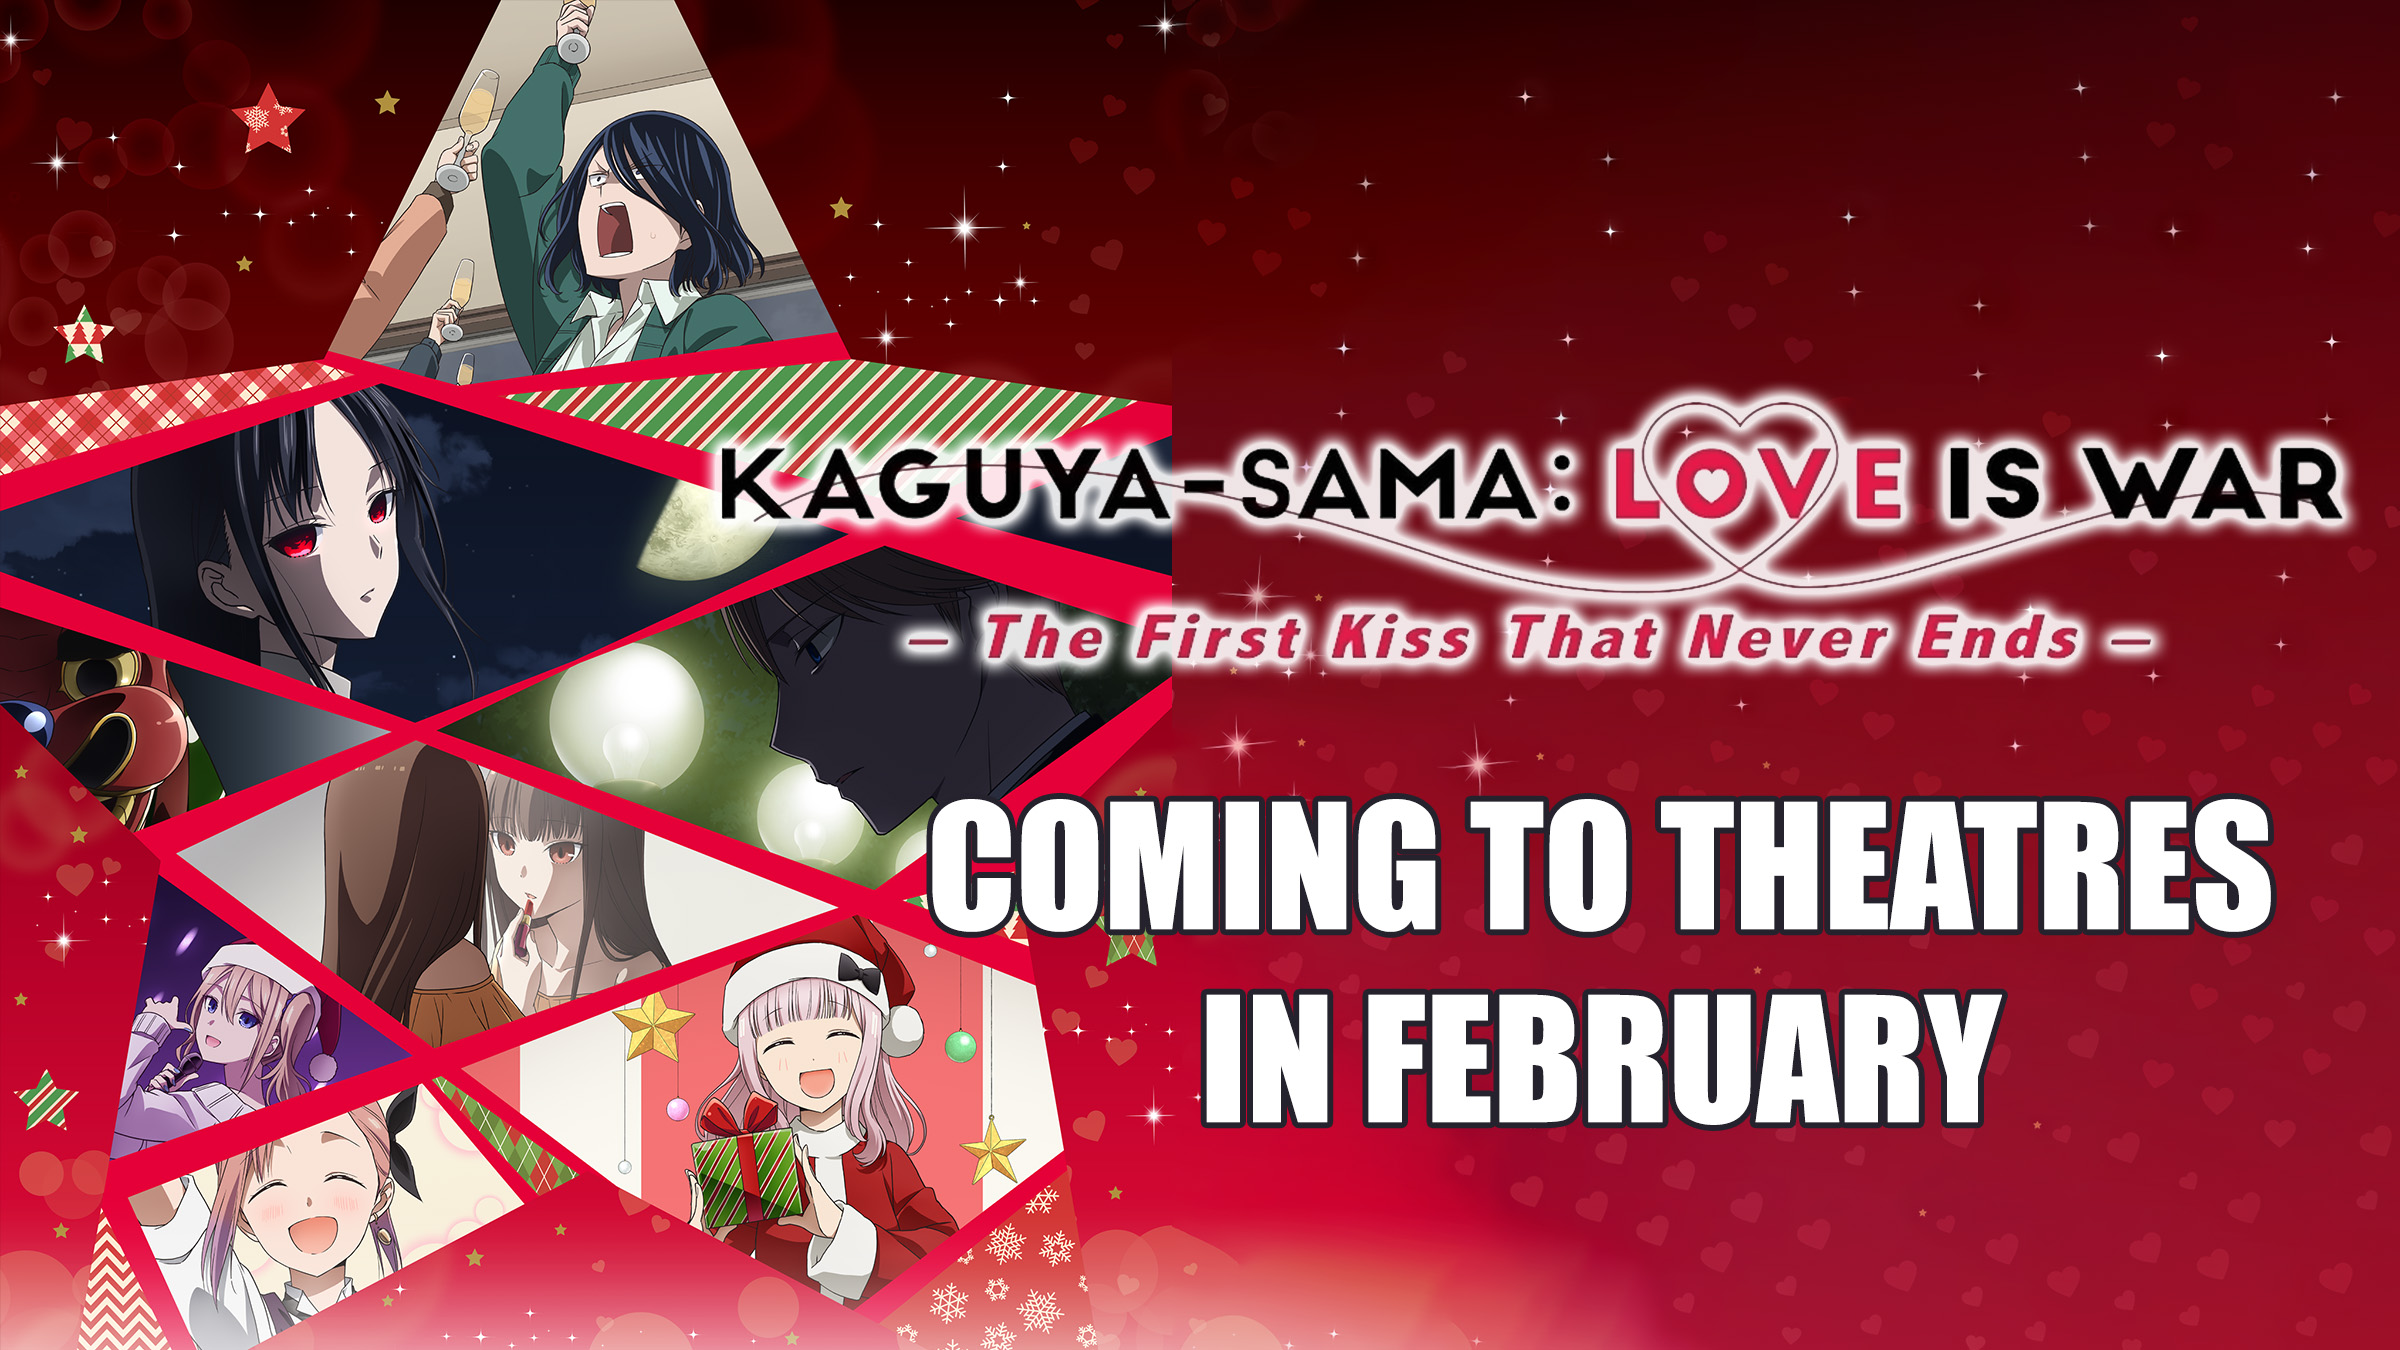 Kaguya-sama láska je válečný film